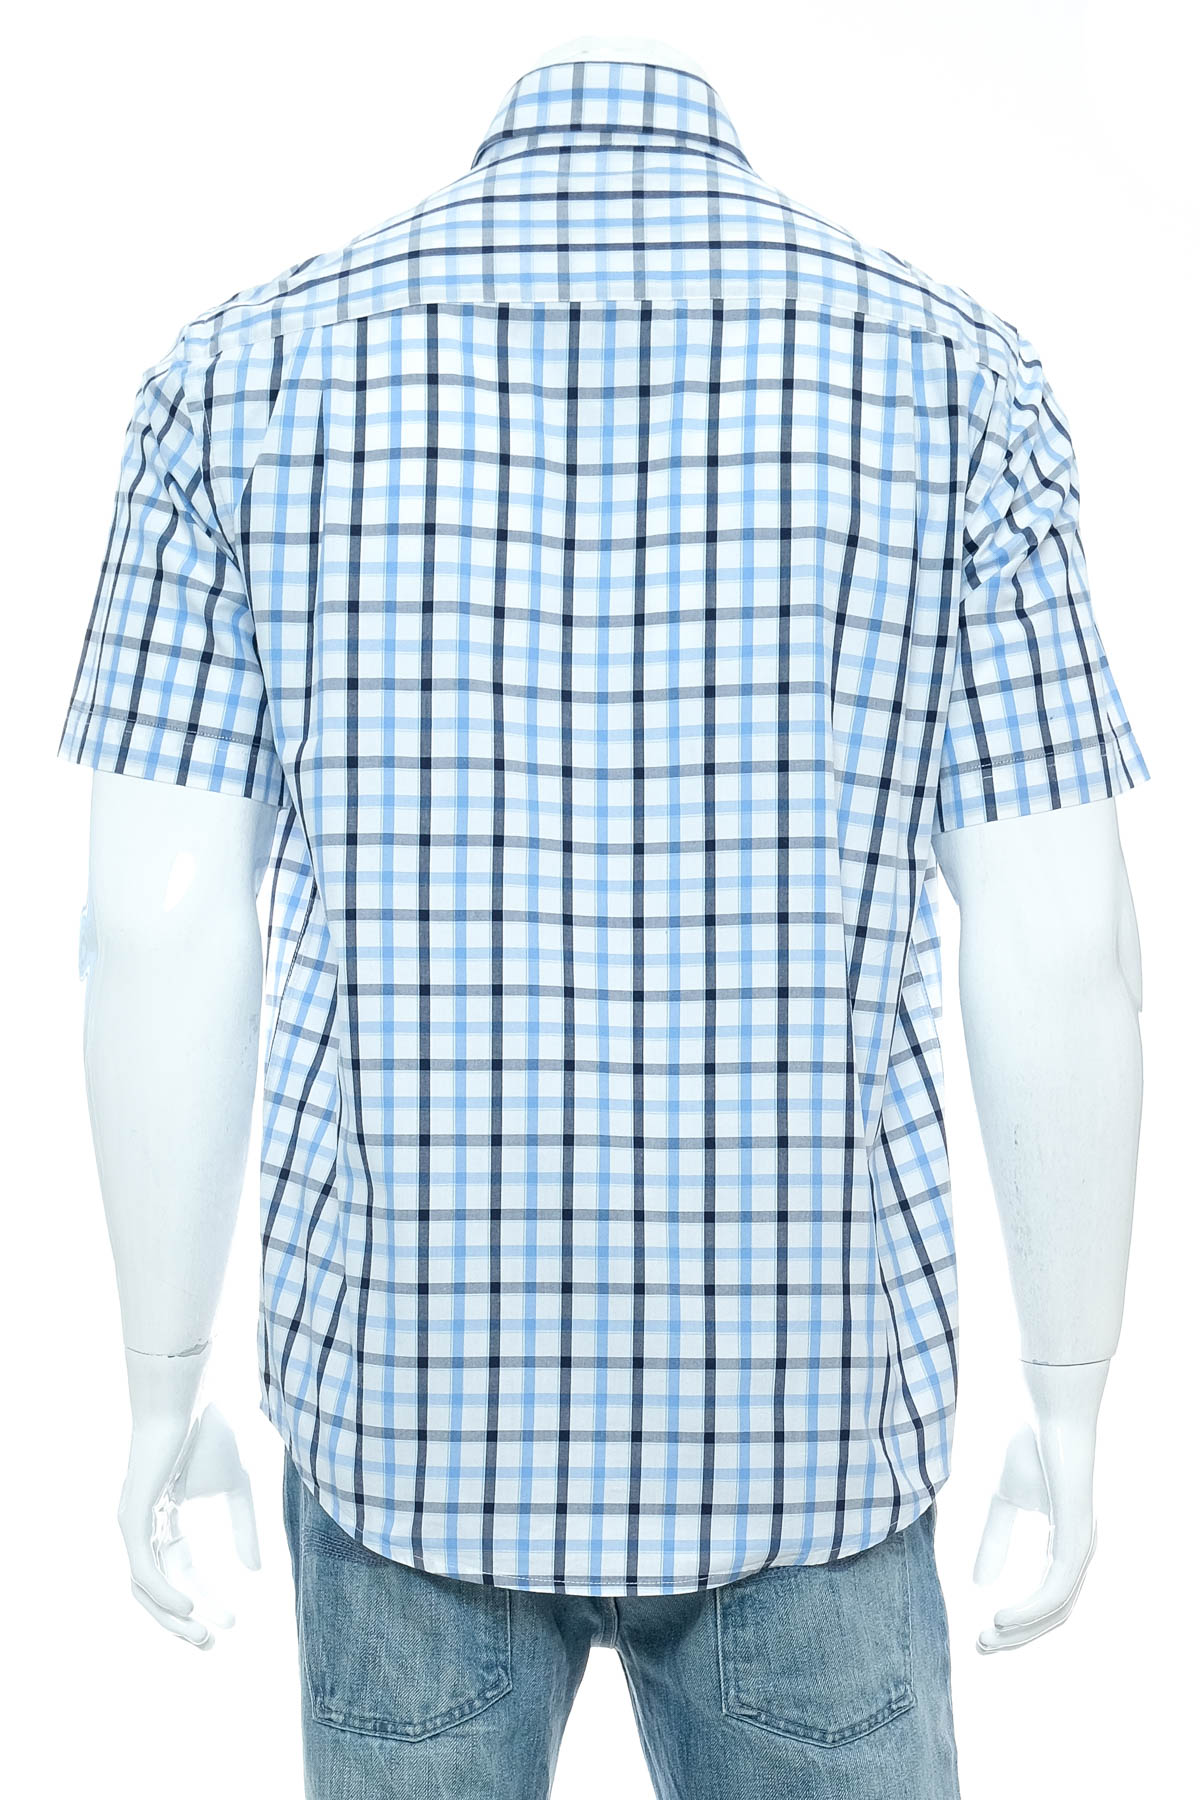 Men's shirt - C.Comberti - 1